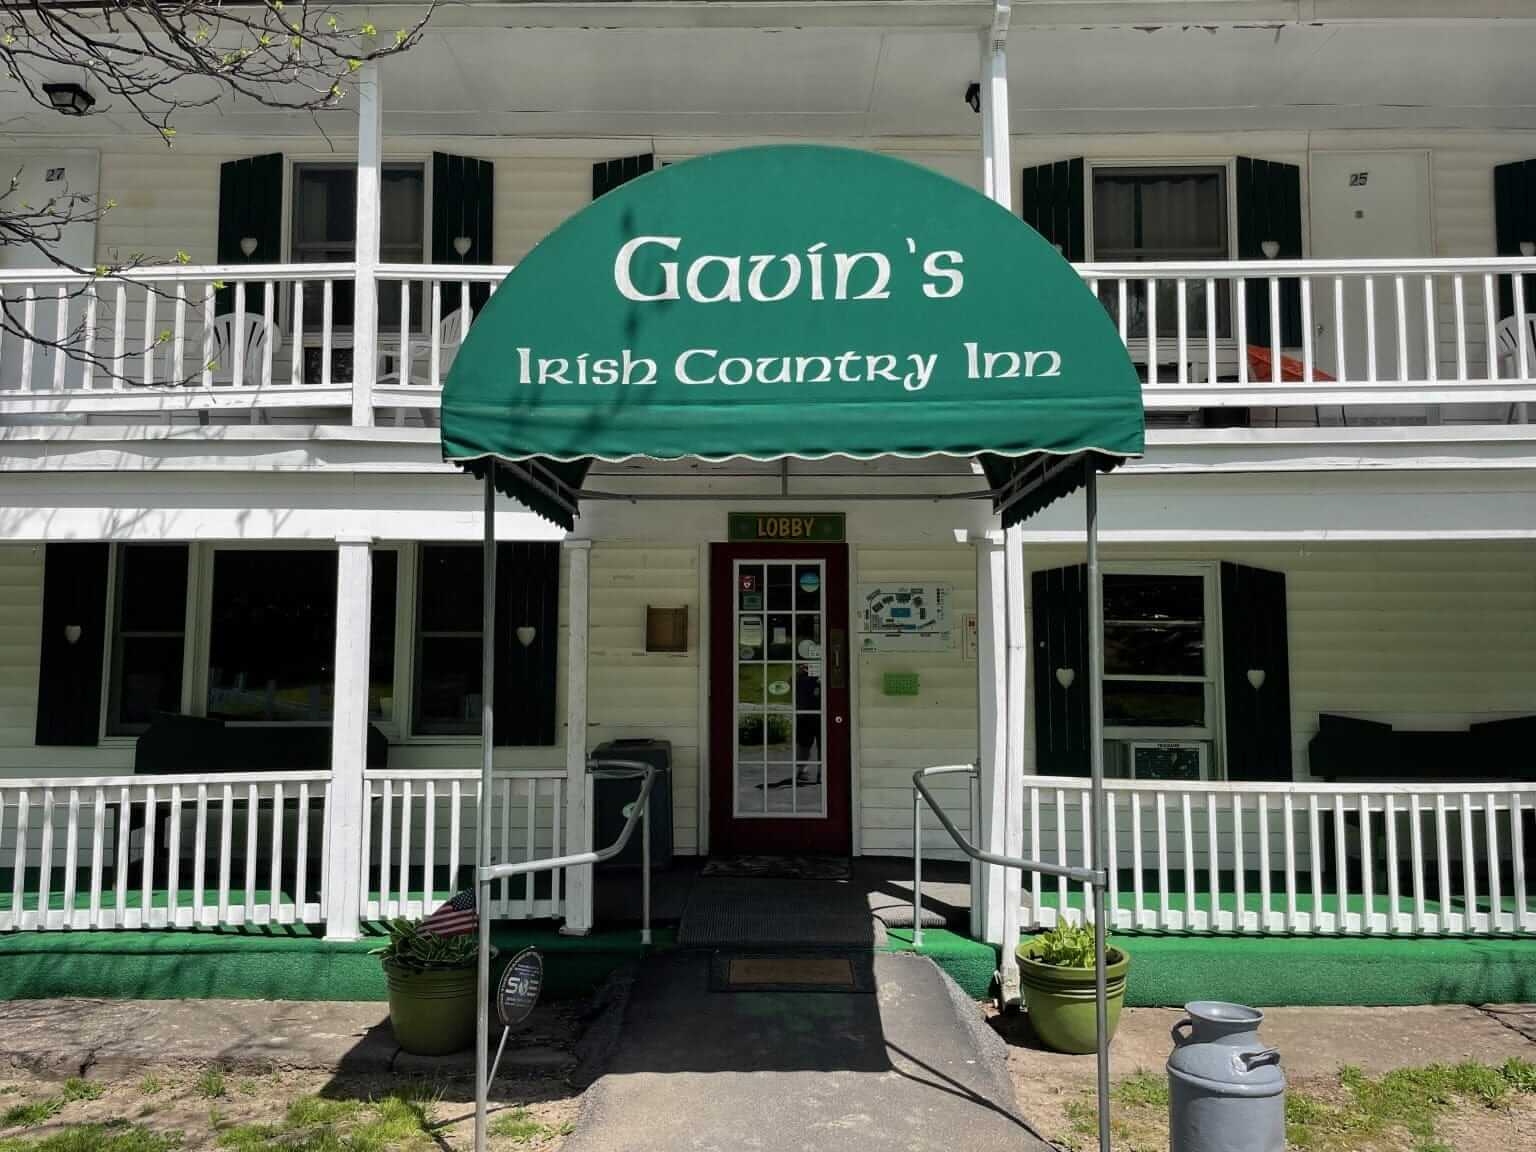 Exterior of Gavin's Irish Country Inn